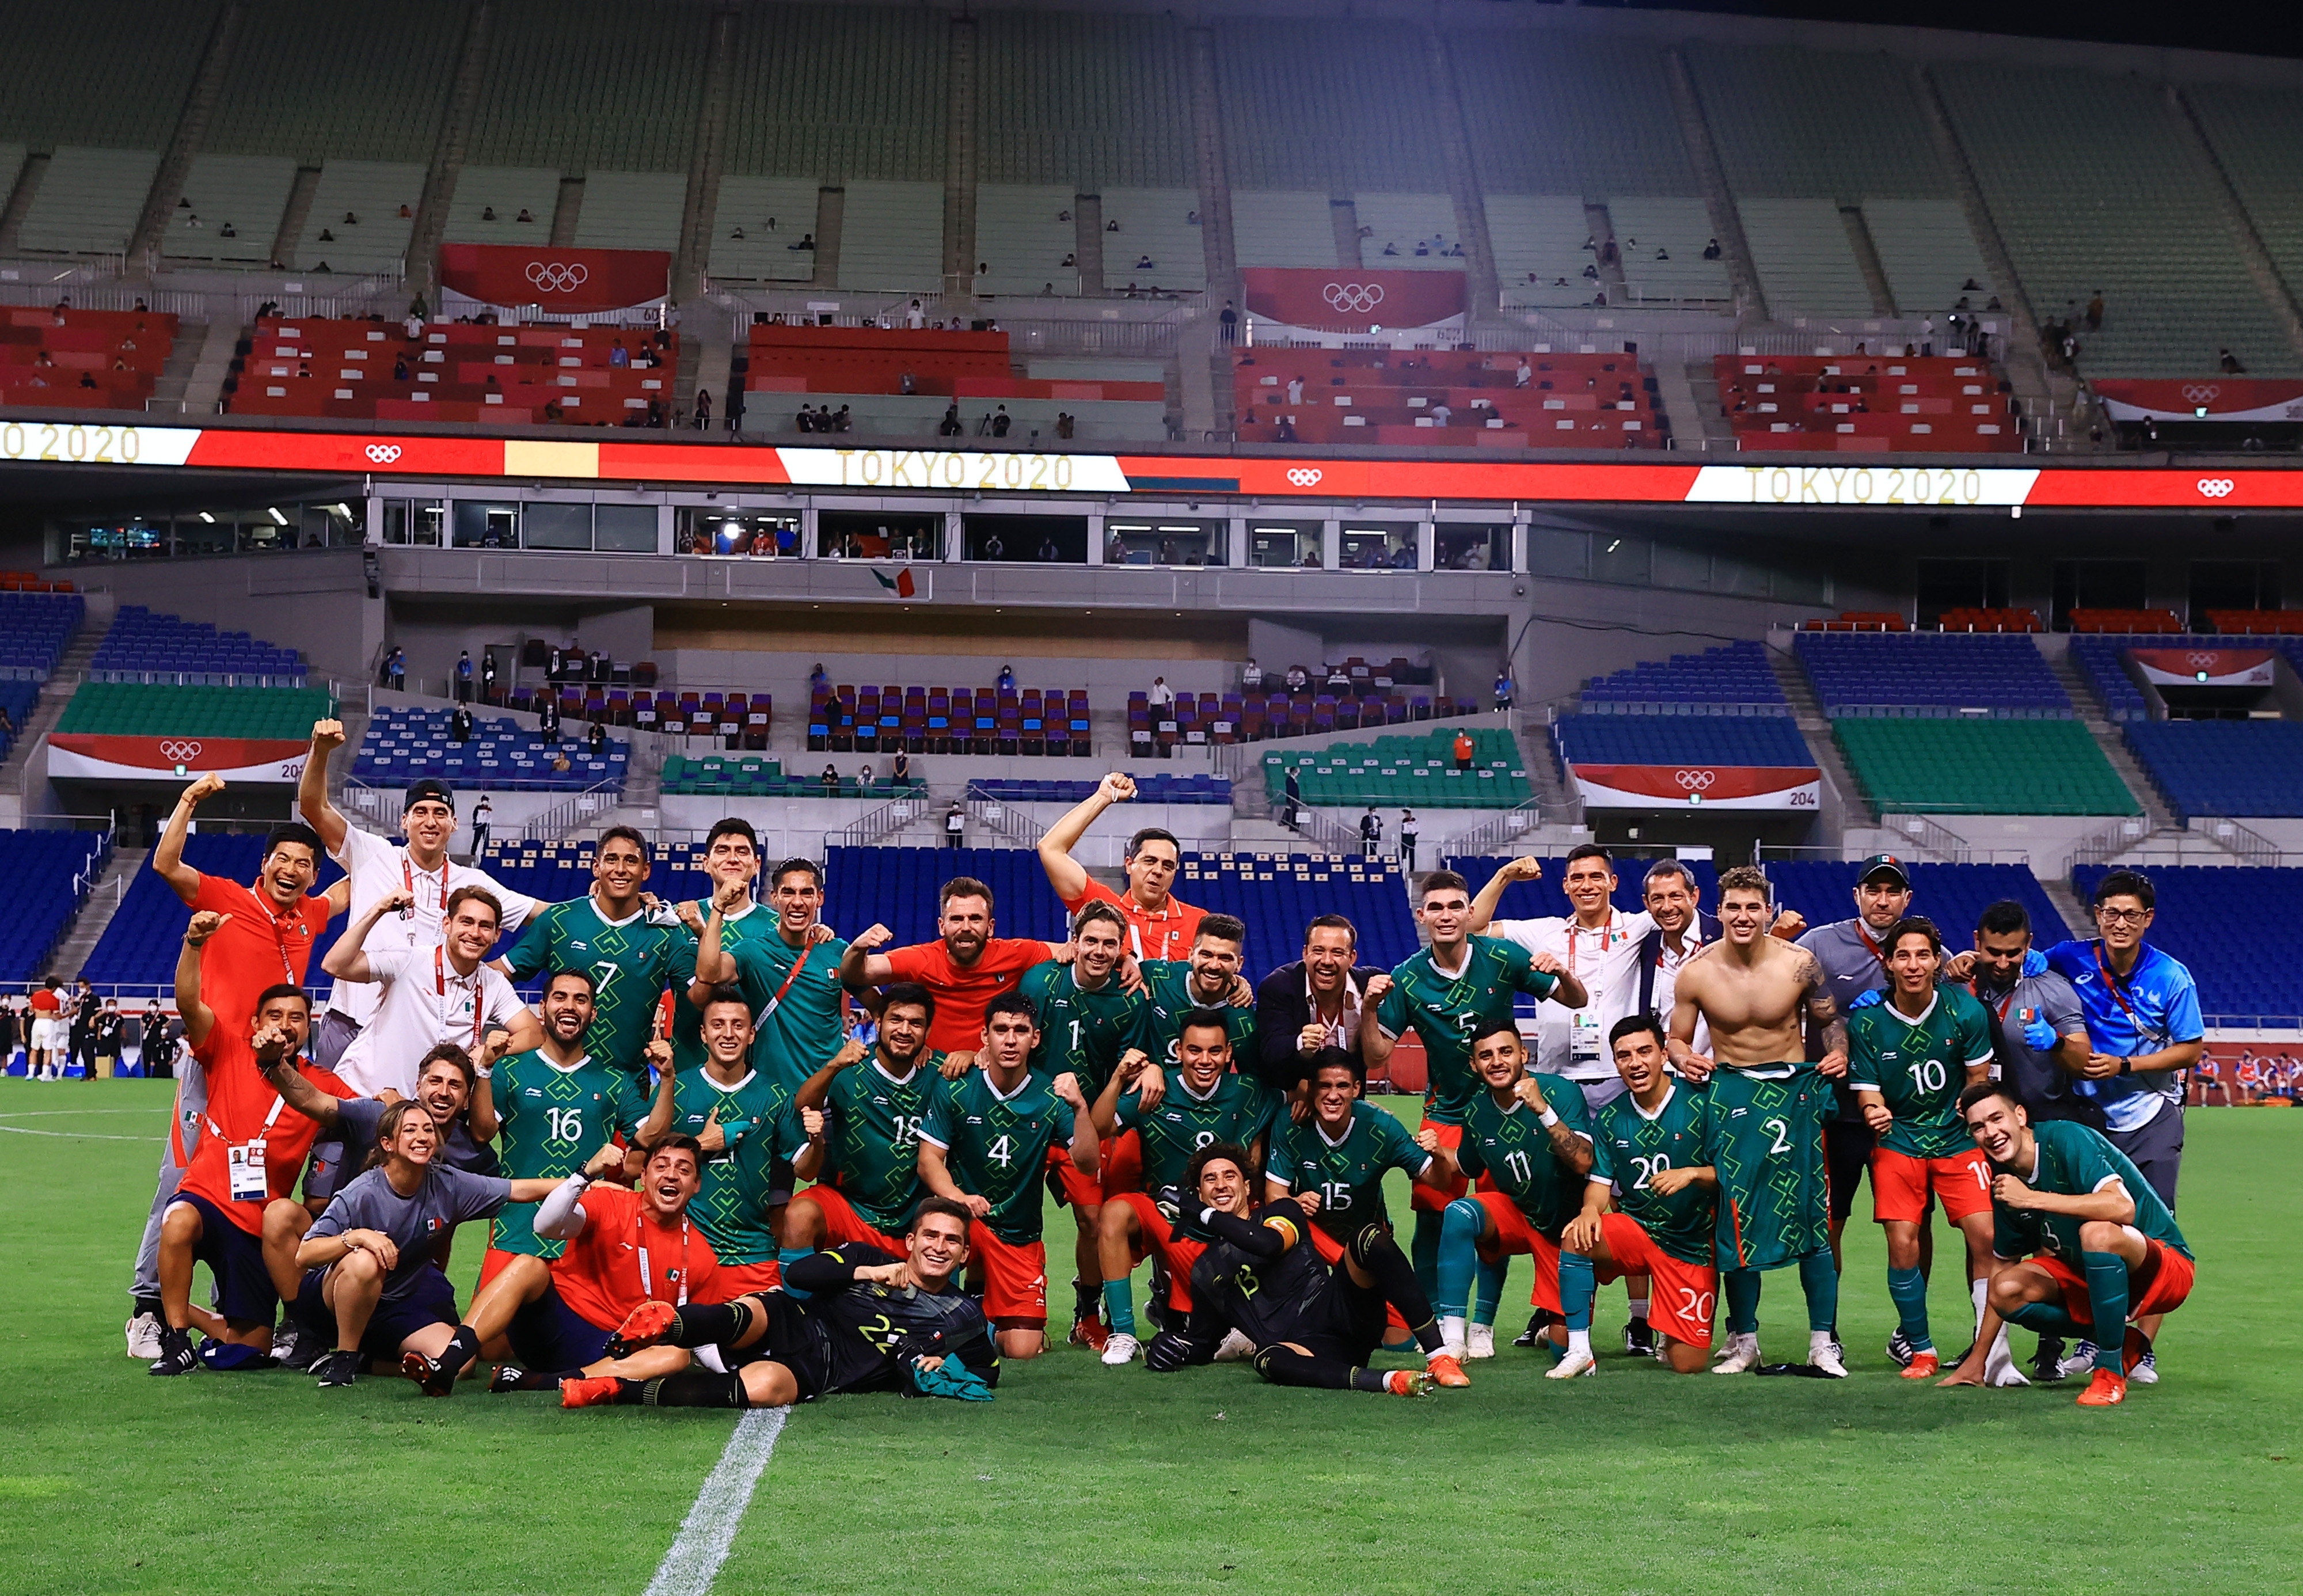 Equipos mexicanos concluyen actuación en el Campeonato Mundial